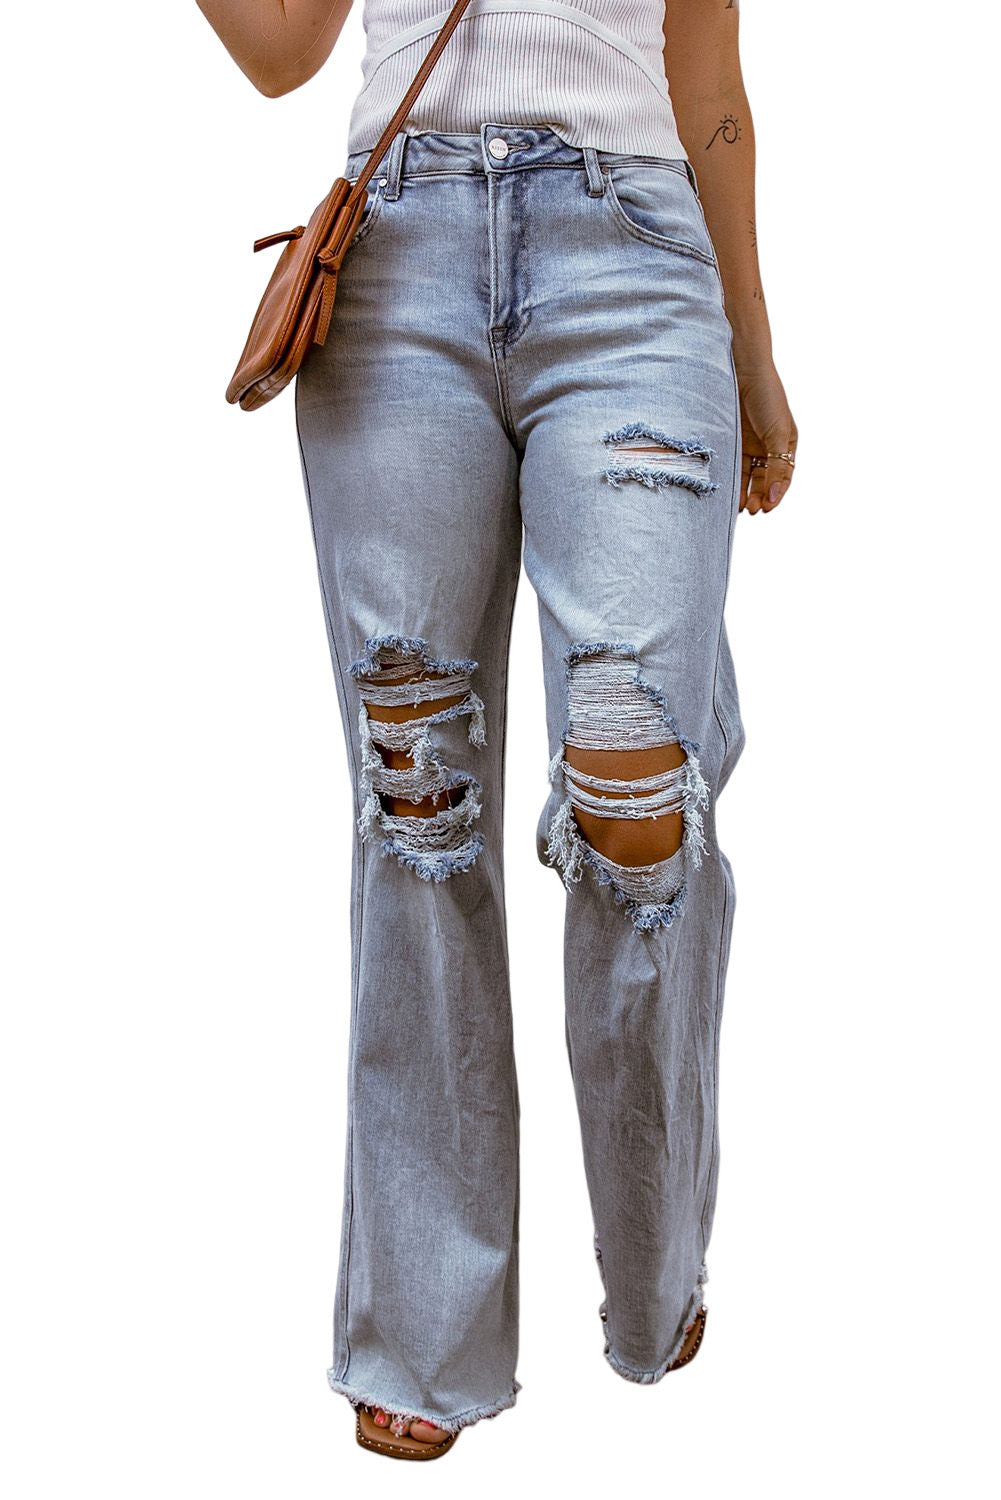 Jeans effetto consumato con gamba larga e orlo grezzo, lavaggio acido azzurro cielo